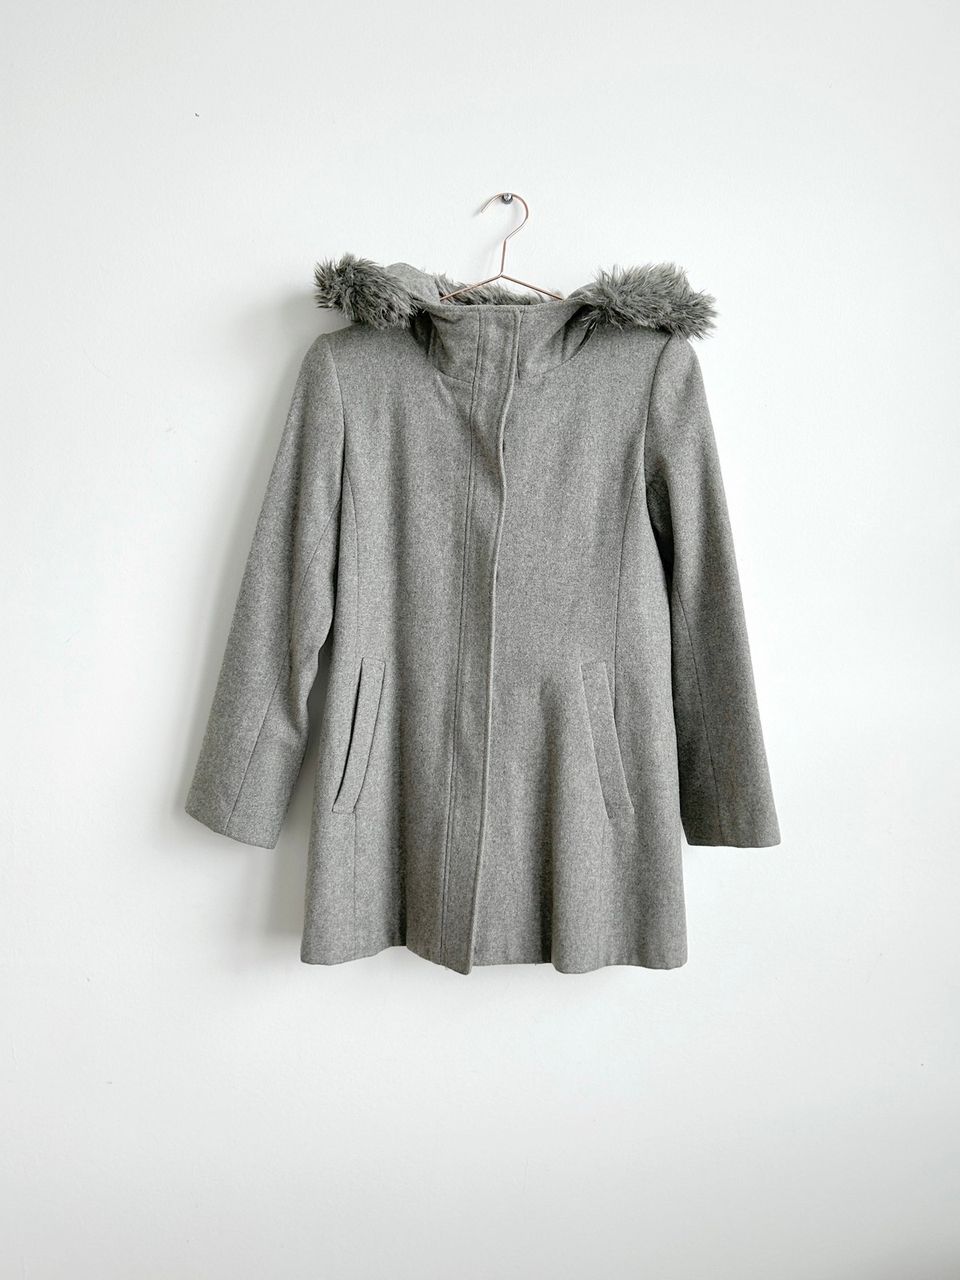 Uniqlo Premium Wool Coat